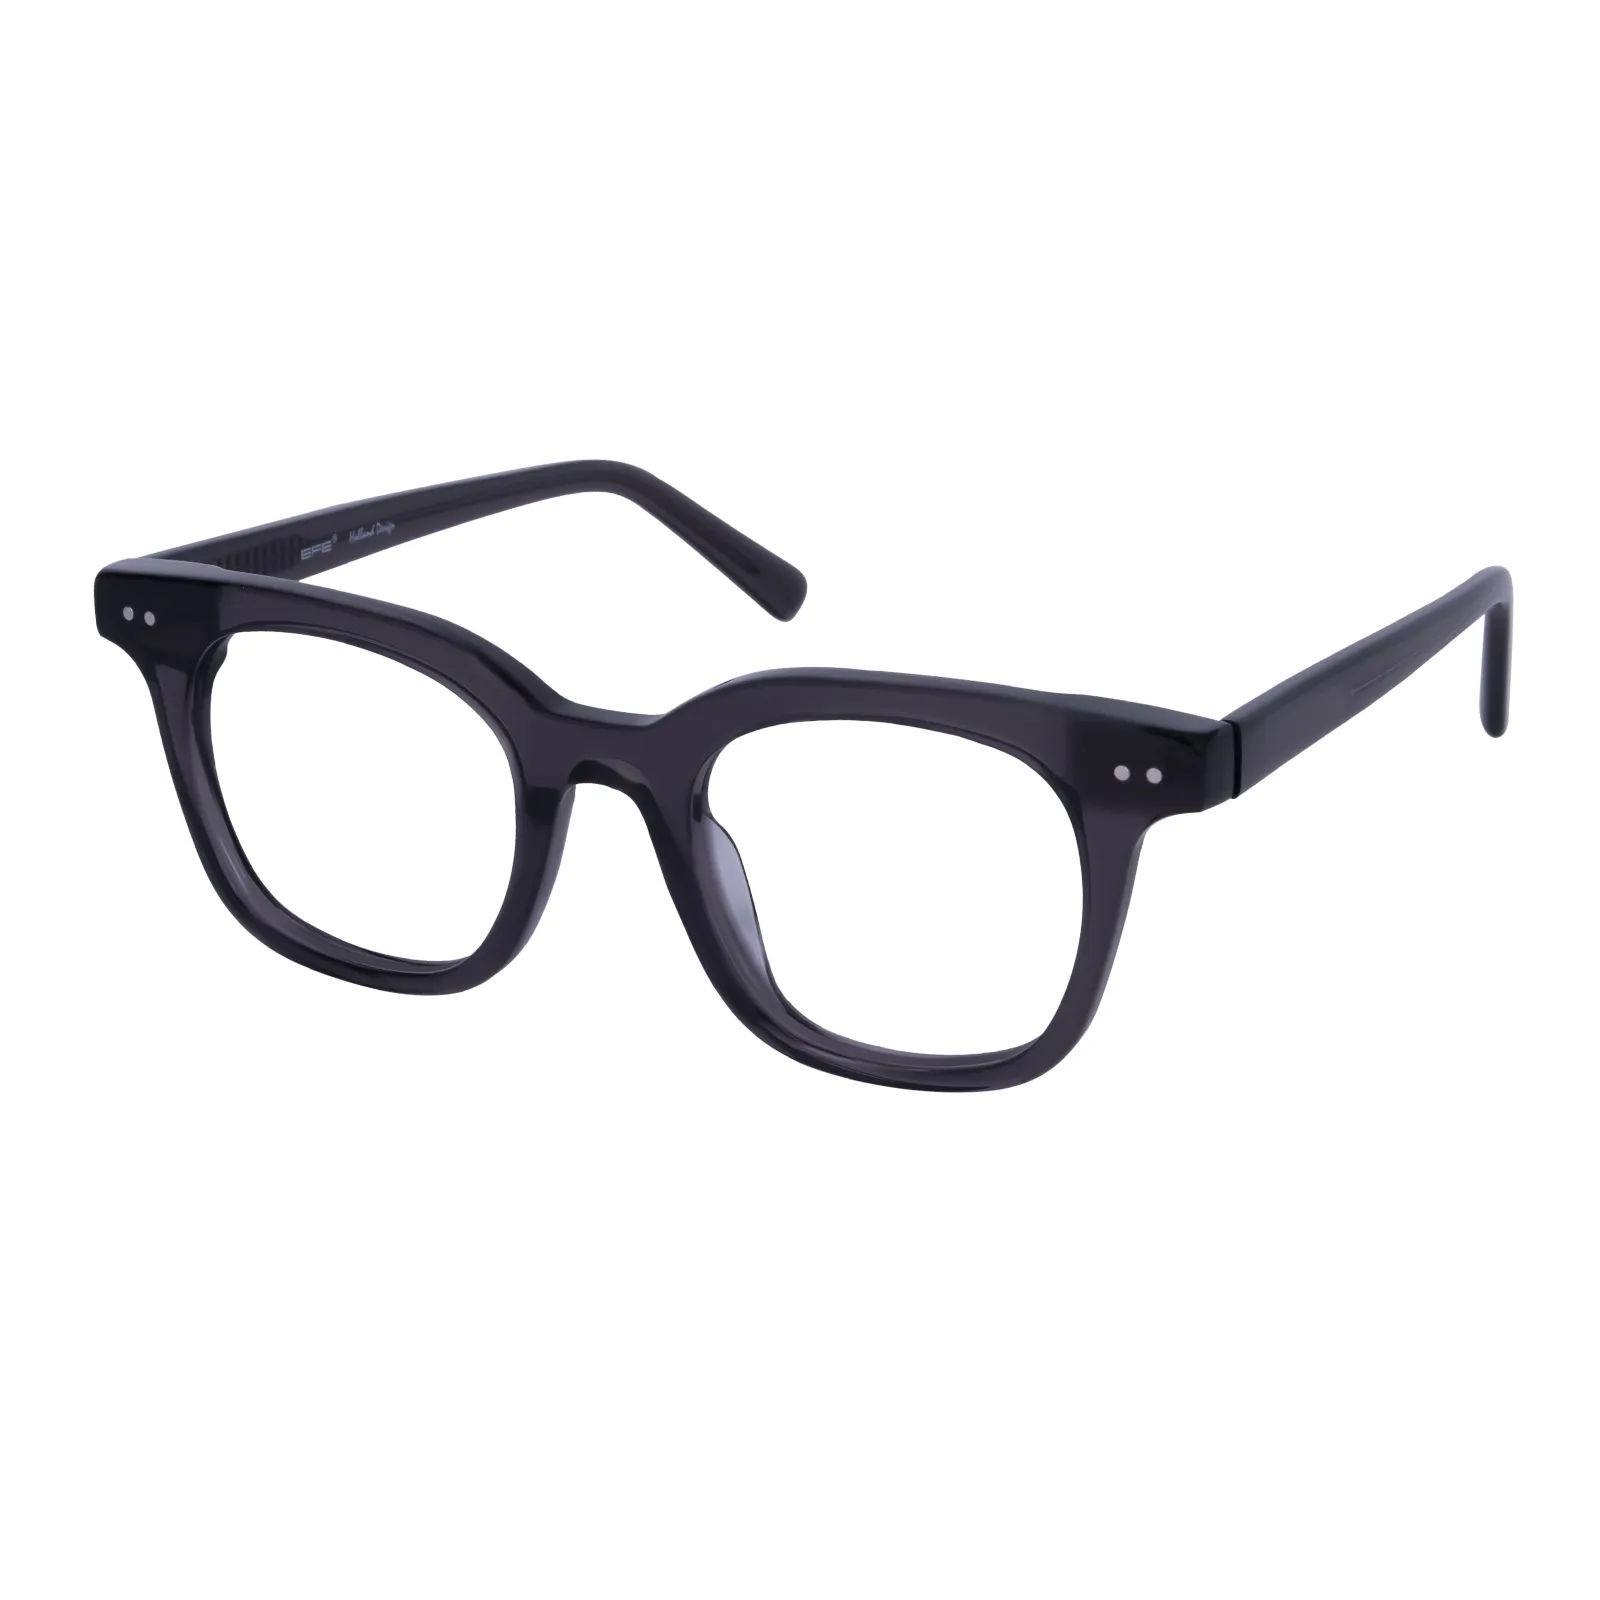 Samson - Square Black Glasses for Women